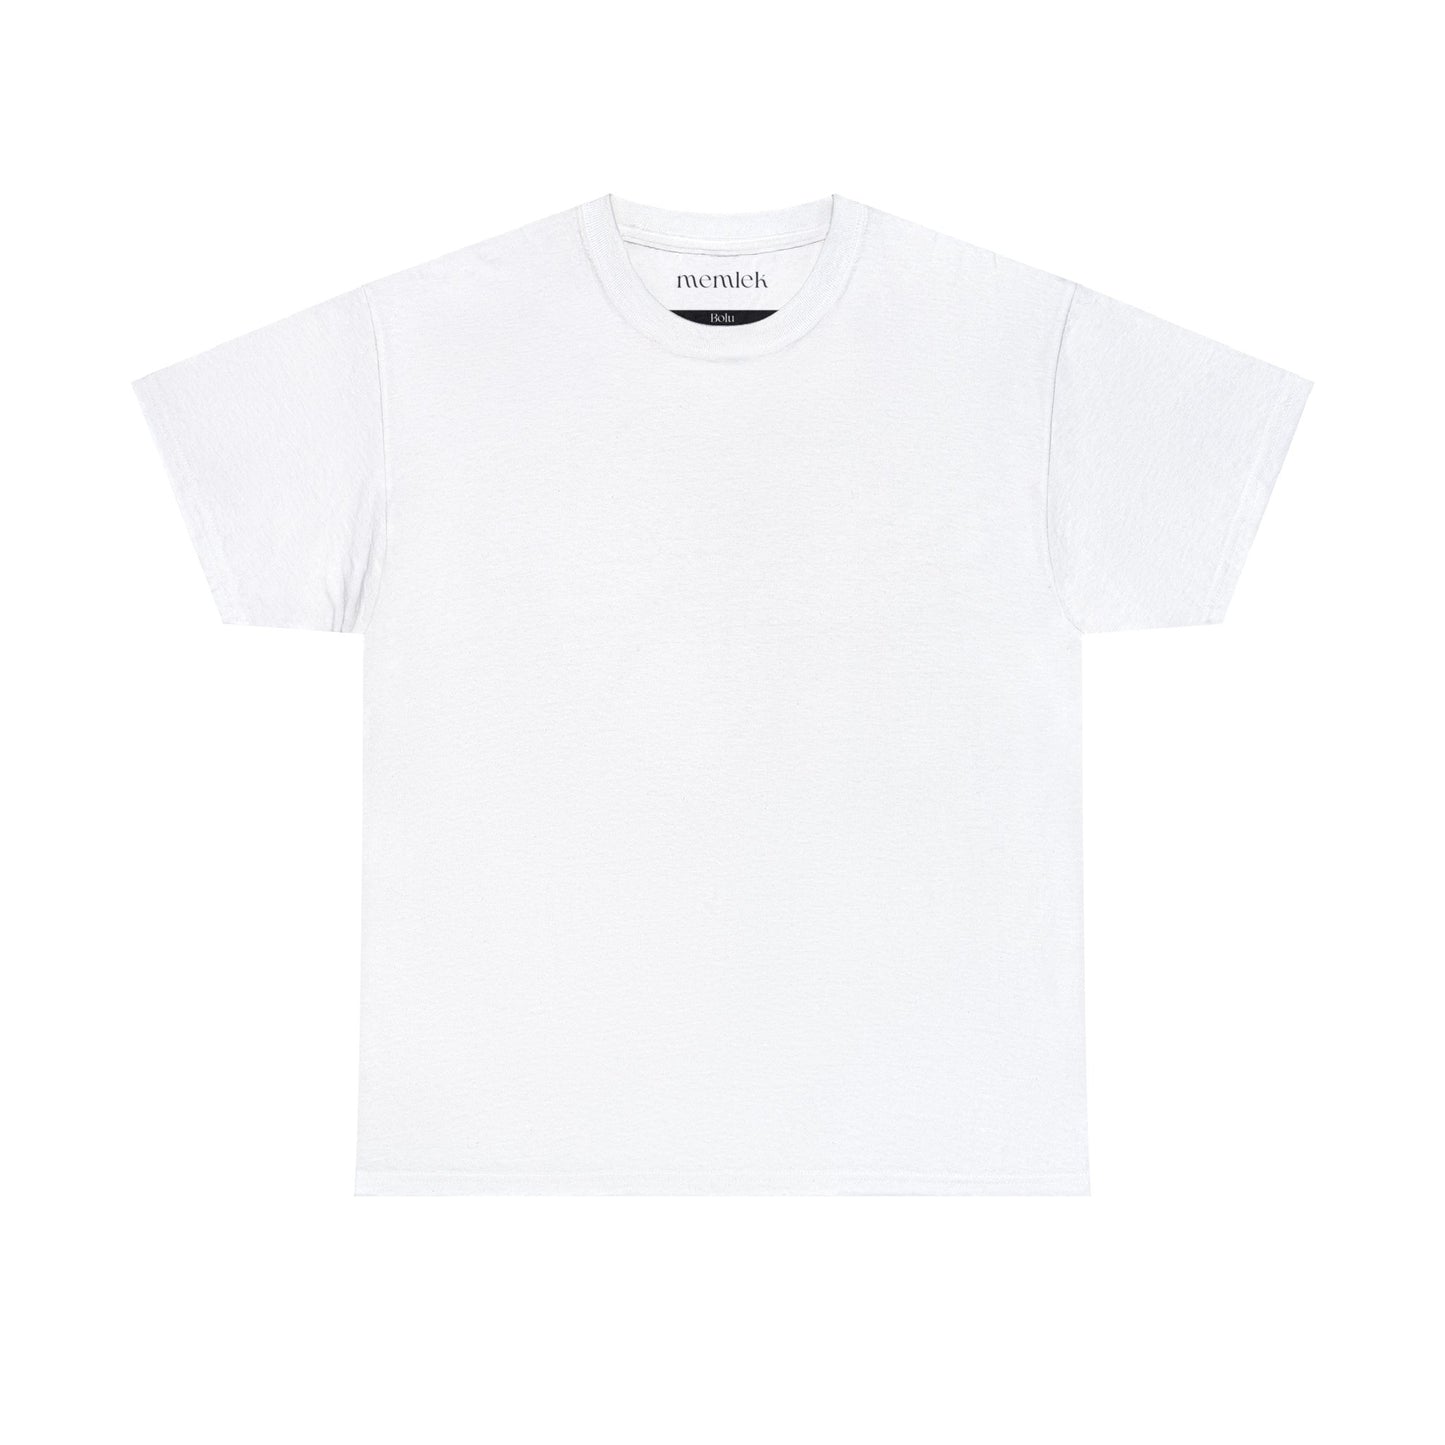 Siyah Lale - 14 Bolu - T-Shirt - Back Print - Black/White